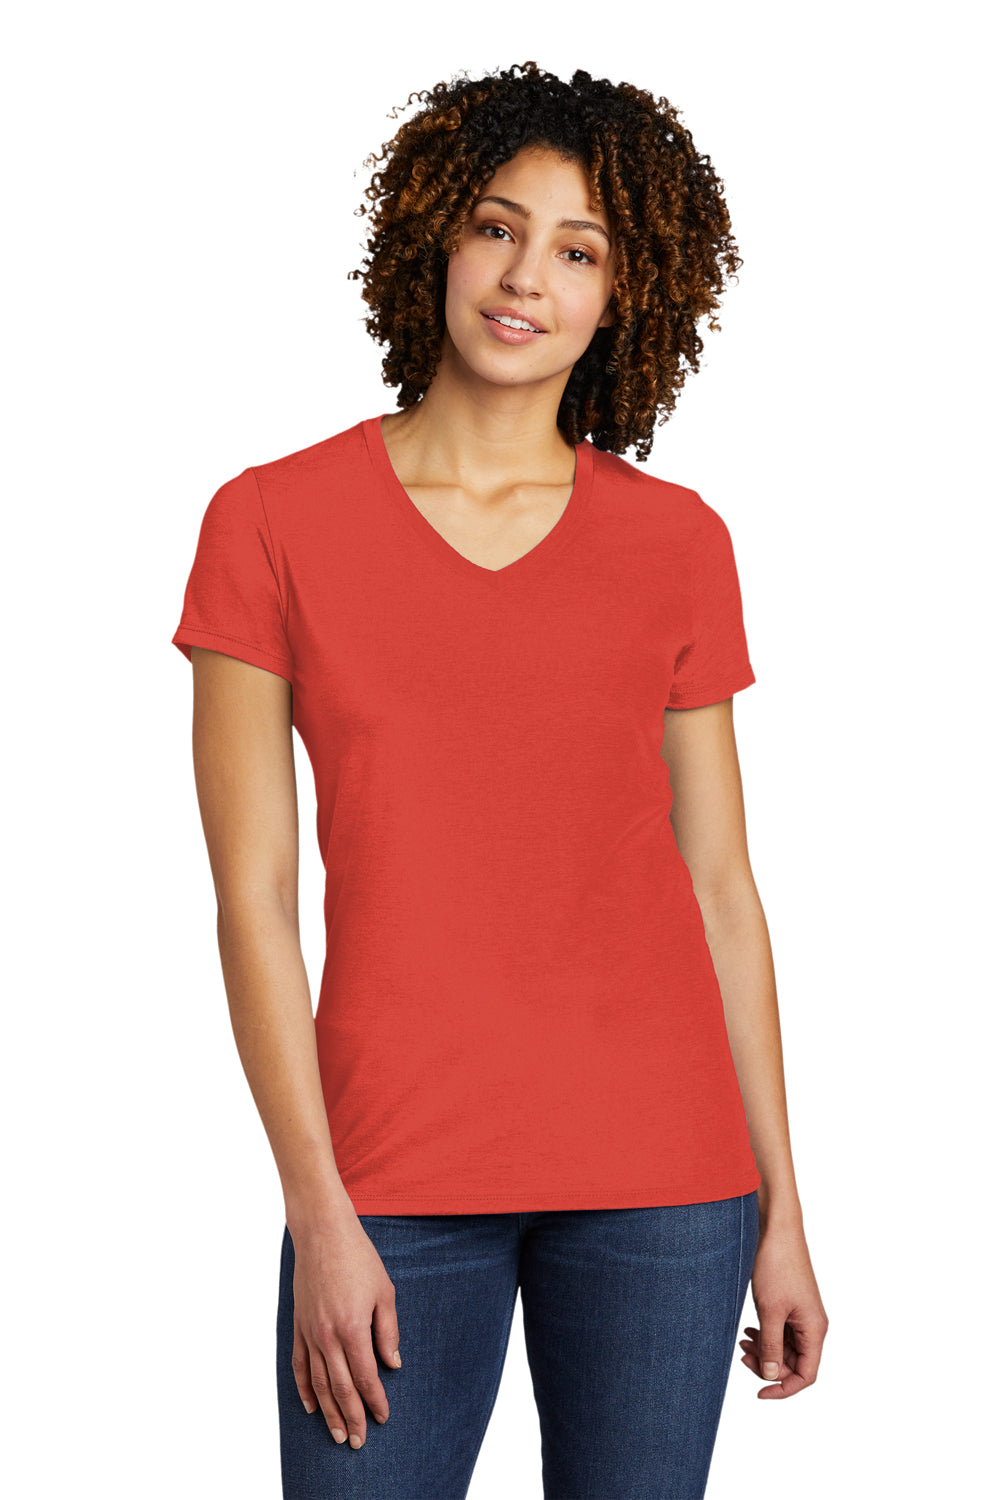 Allmade AL2018 Womens Short Sleeve V-Neck T-Shirt Desert Sun Red Model Front